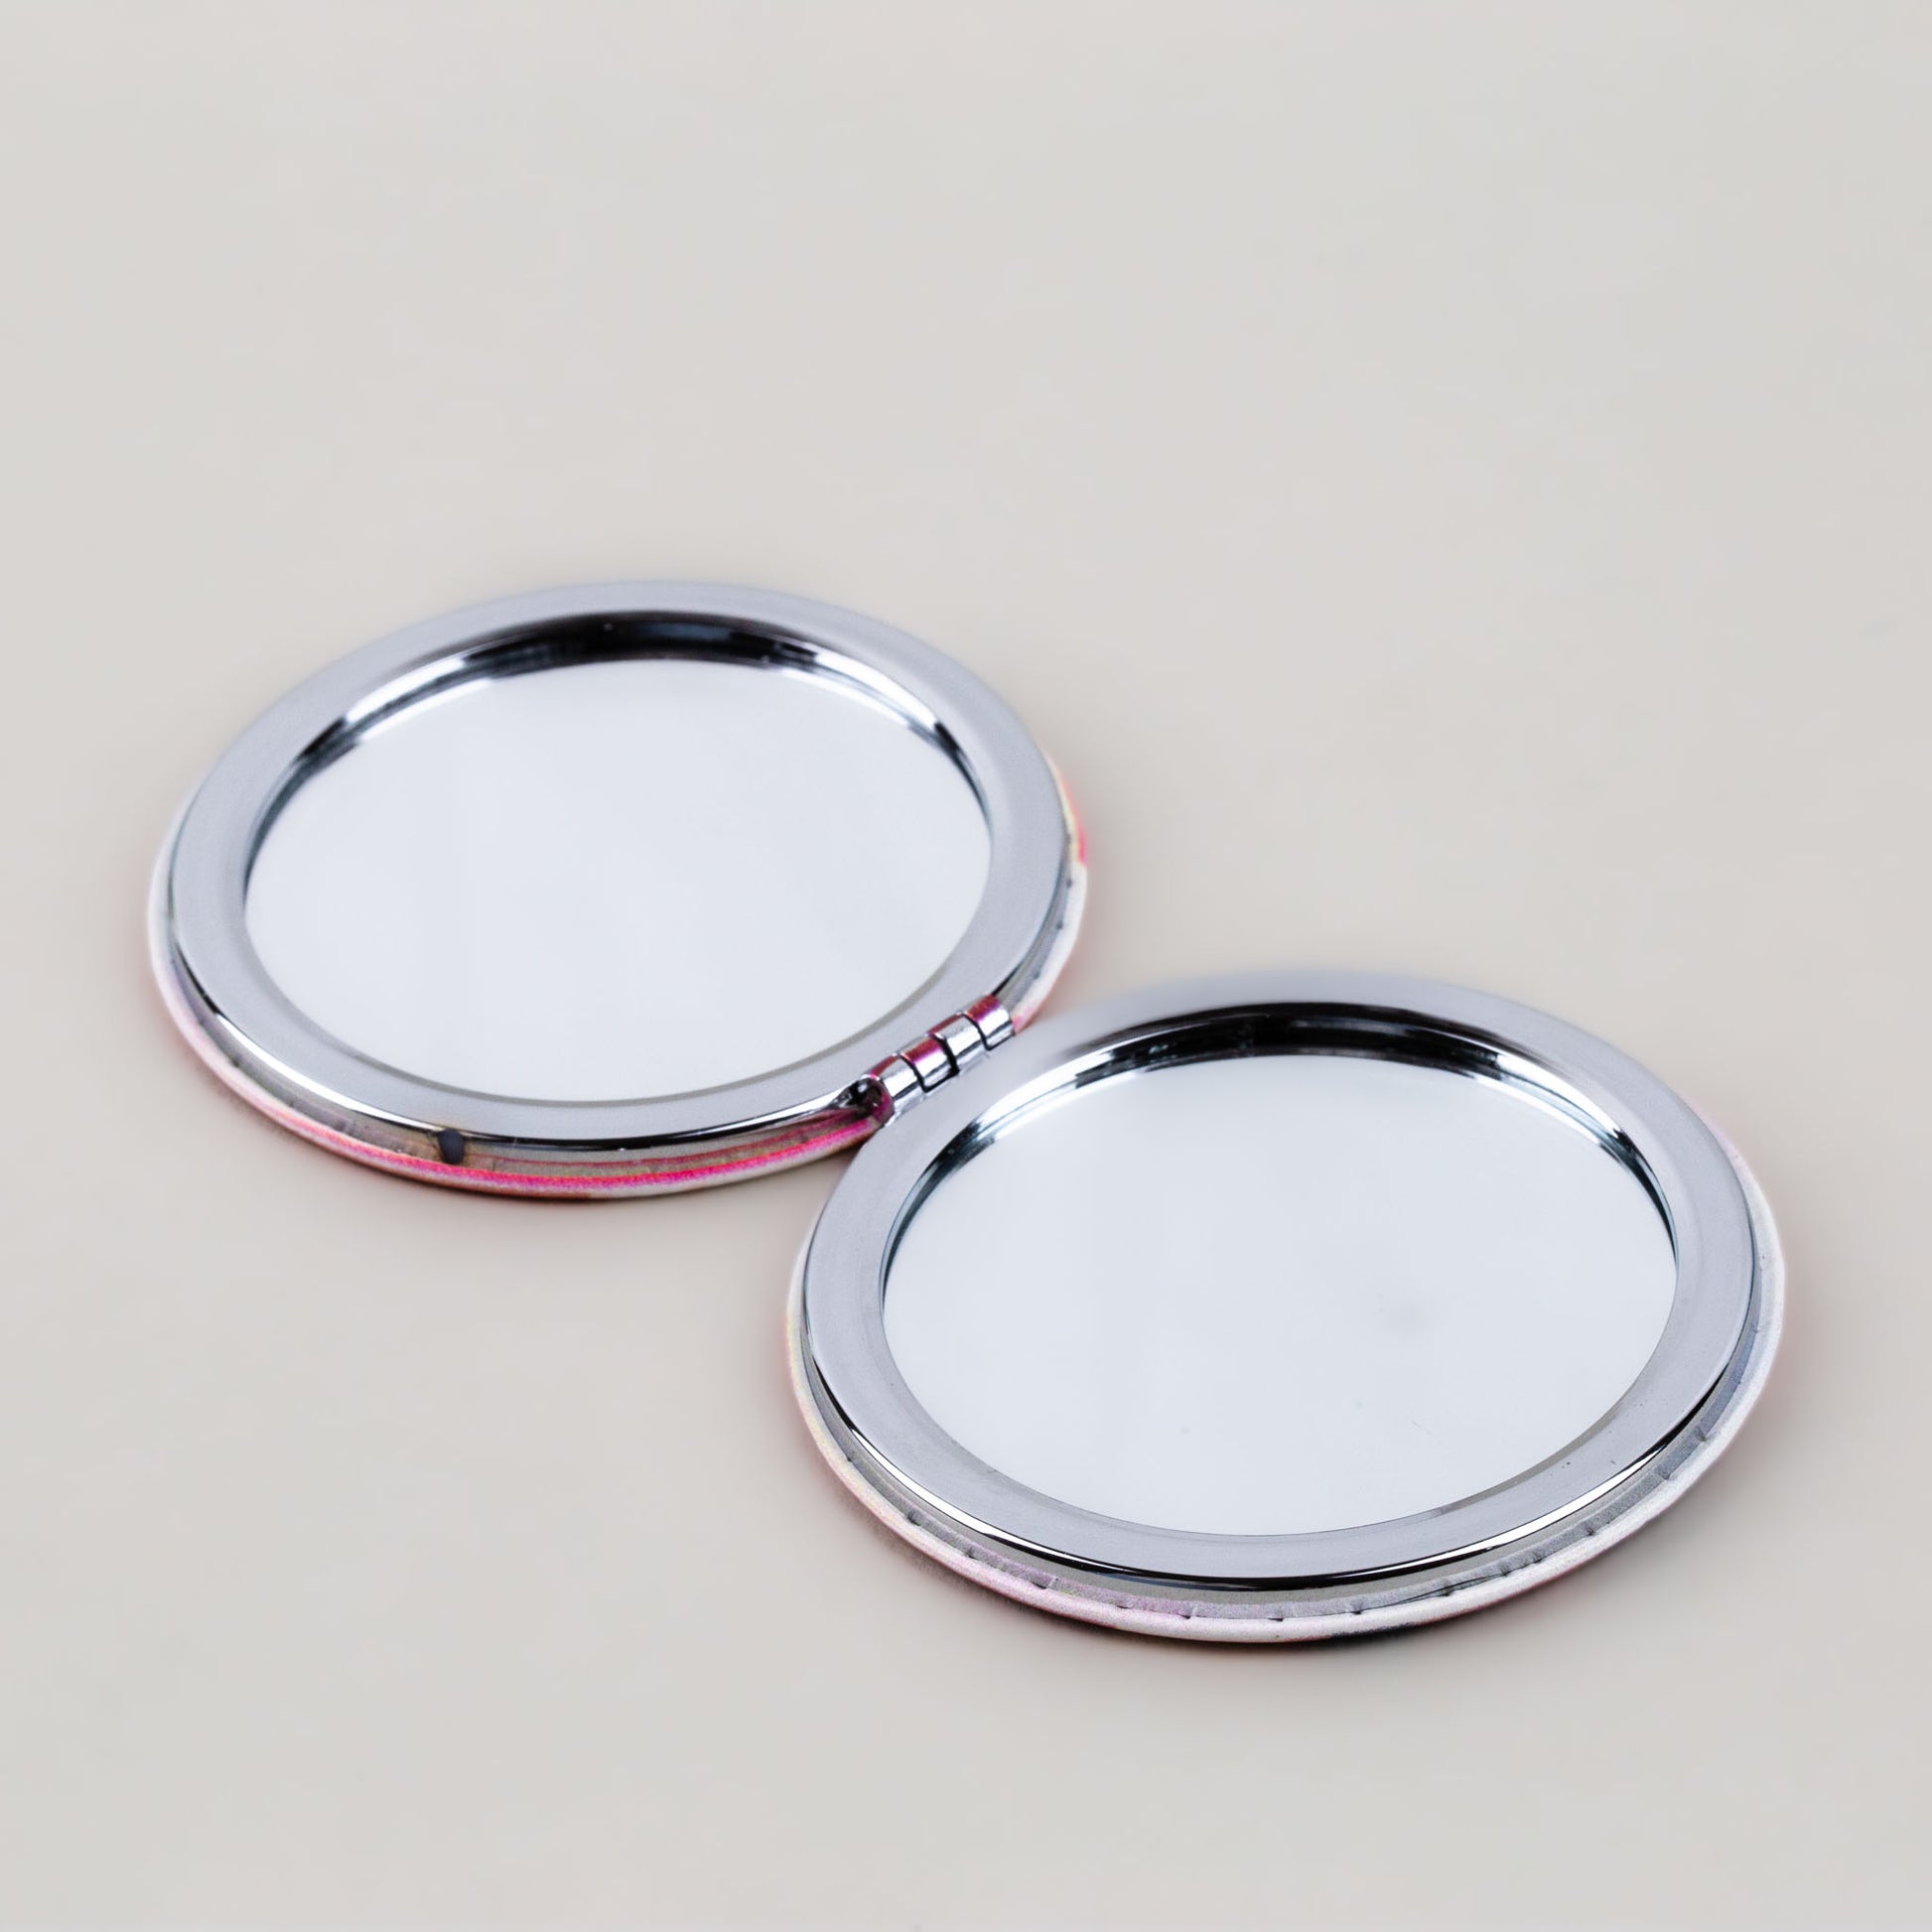 Oglindă de poșetă, formă rotundă cu 2 părți, model summer time - Red